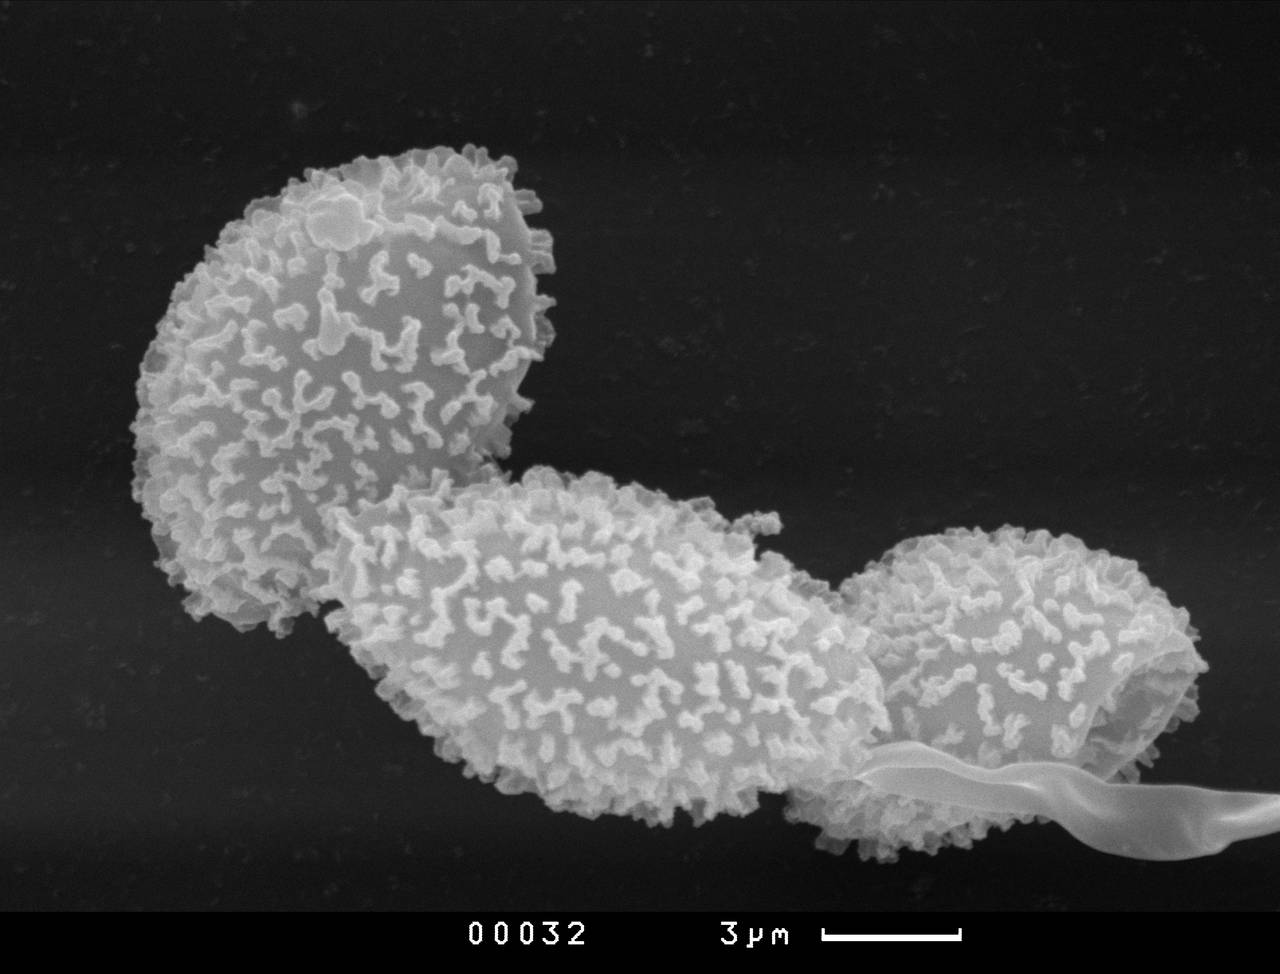 Diacheopsis nannengae, споры и фрагмент капиллиция, СЭМ, Терский, Мурманская область (Россия)